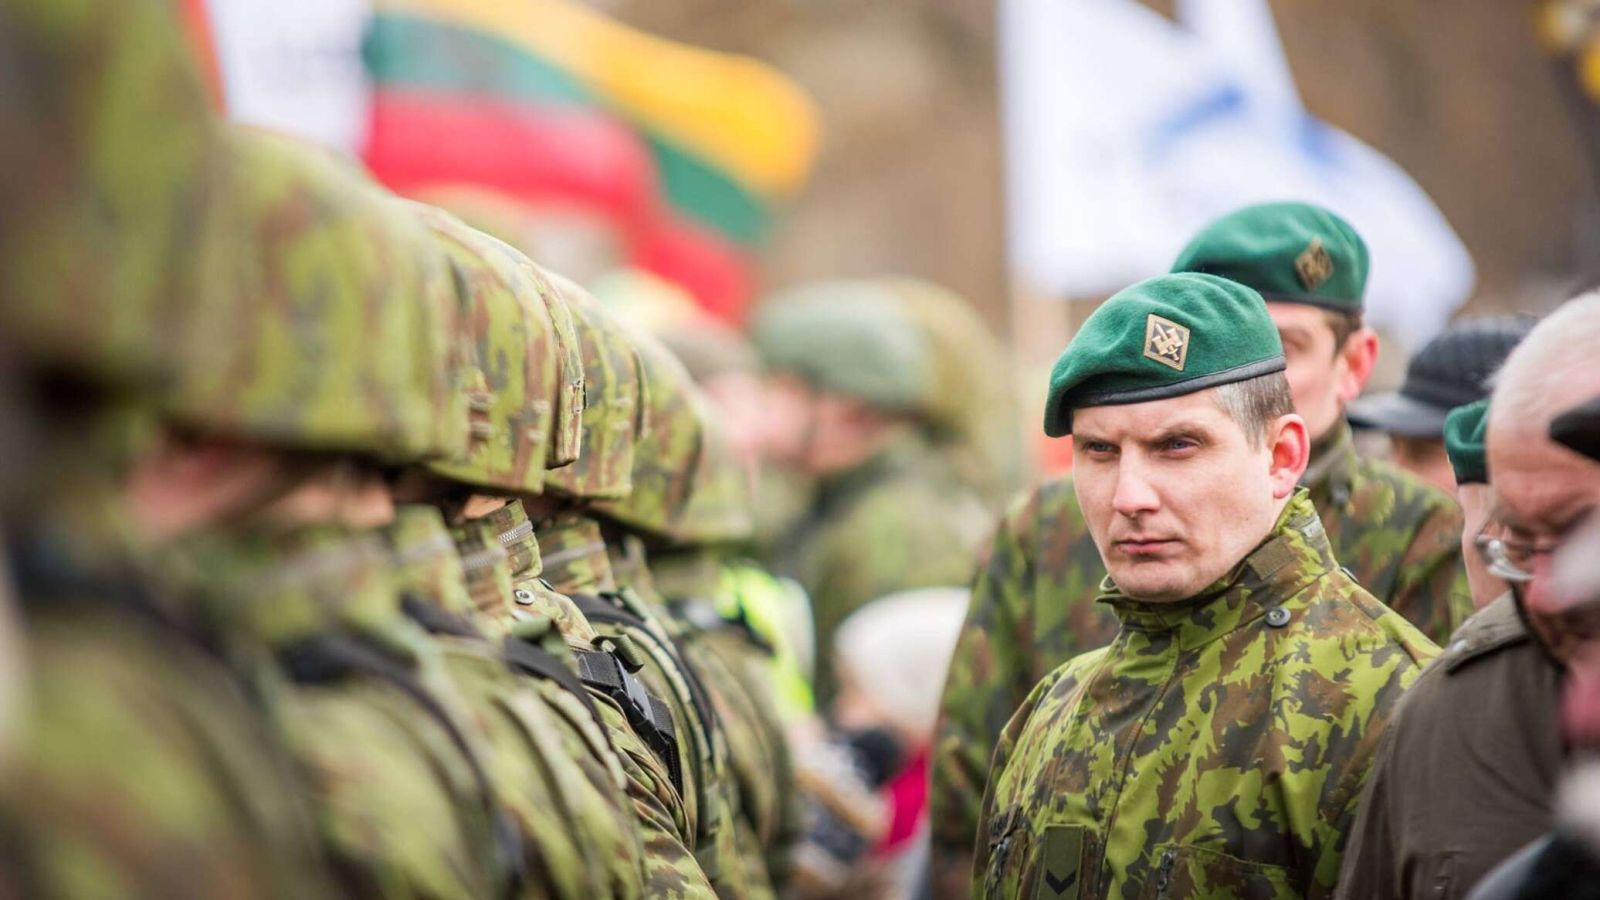 Litva hərbiyə 7 milyon avro ayırıb